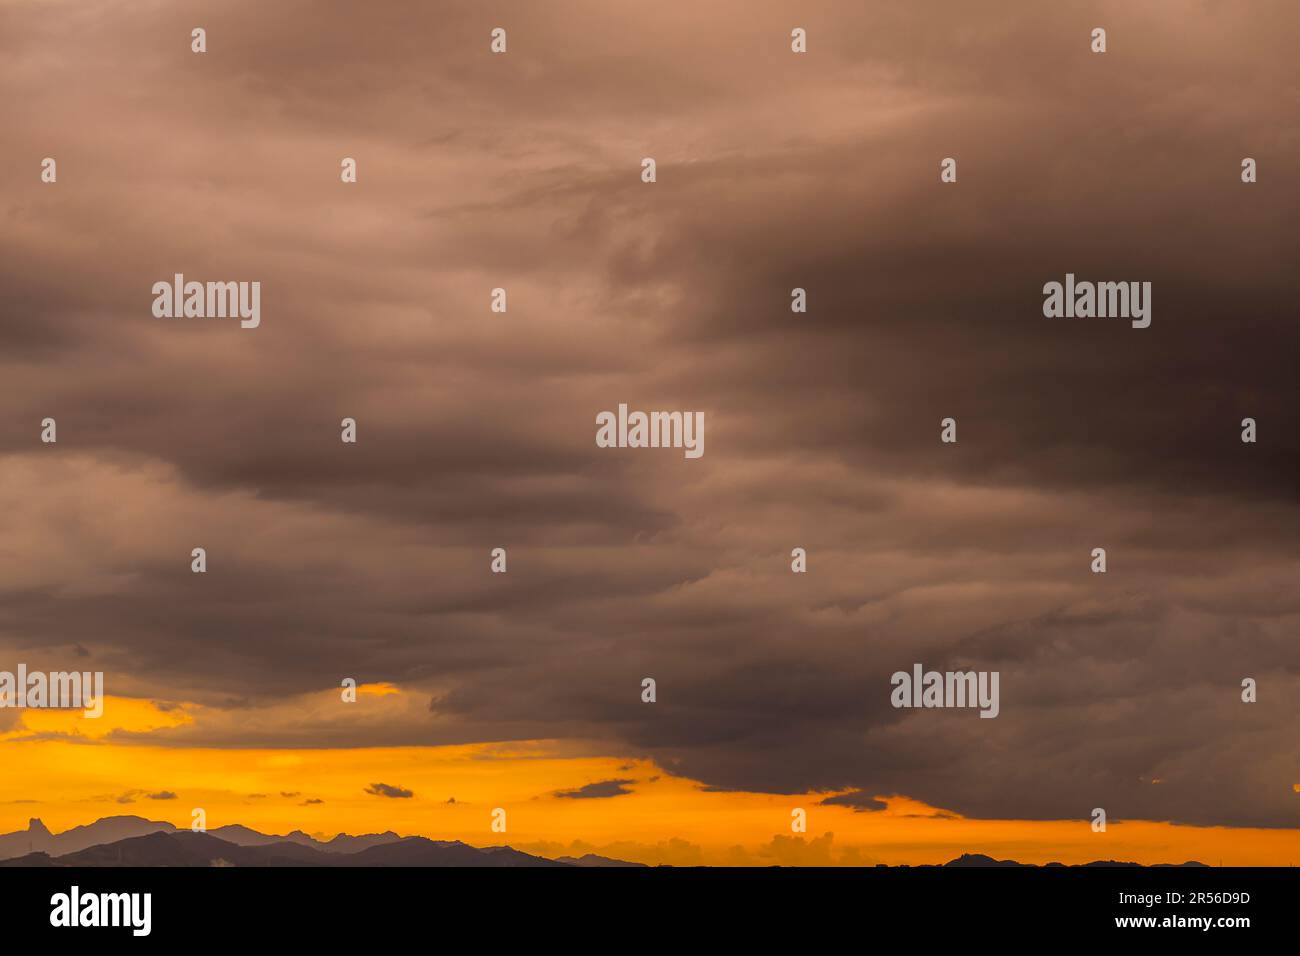 Astratto e modello di cielo nuvoloso Calming corallo, arancione, sfondo colore tendenza, modello di nuvola colorata e cielo tramonto o alba: Tramonto drammatico Foto Stock